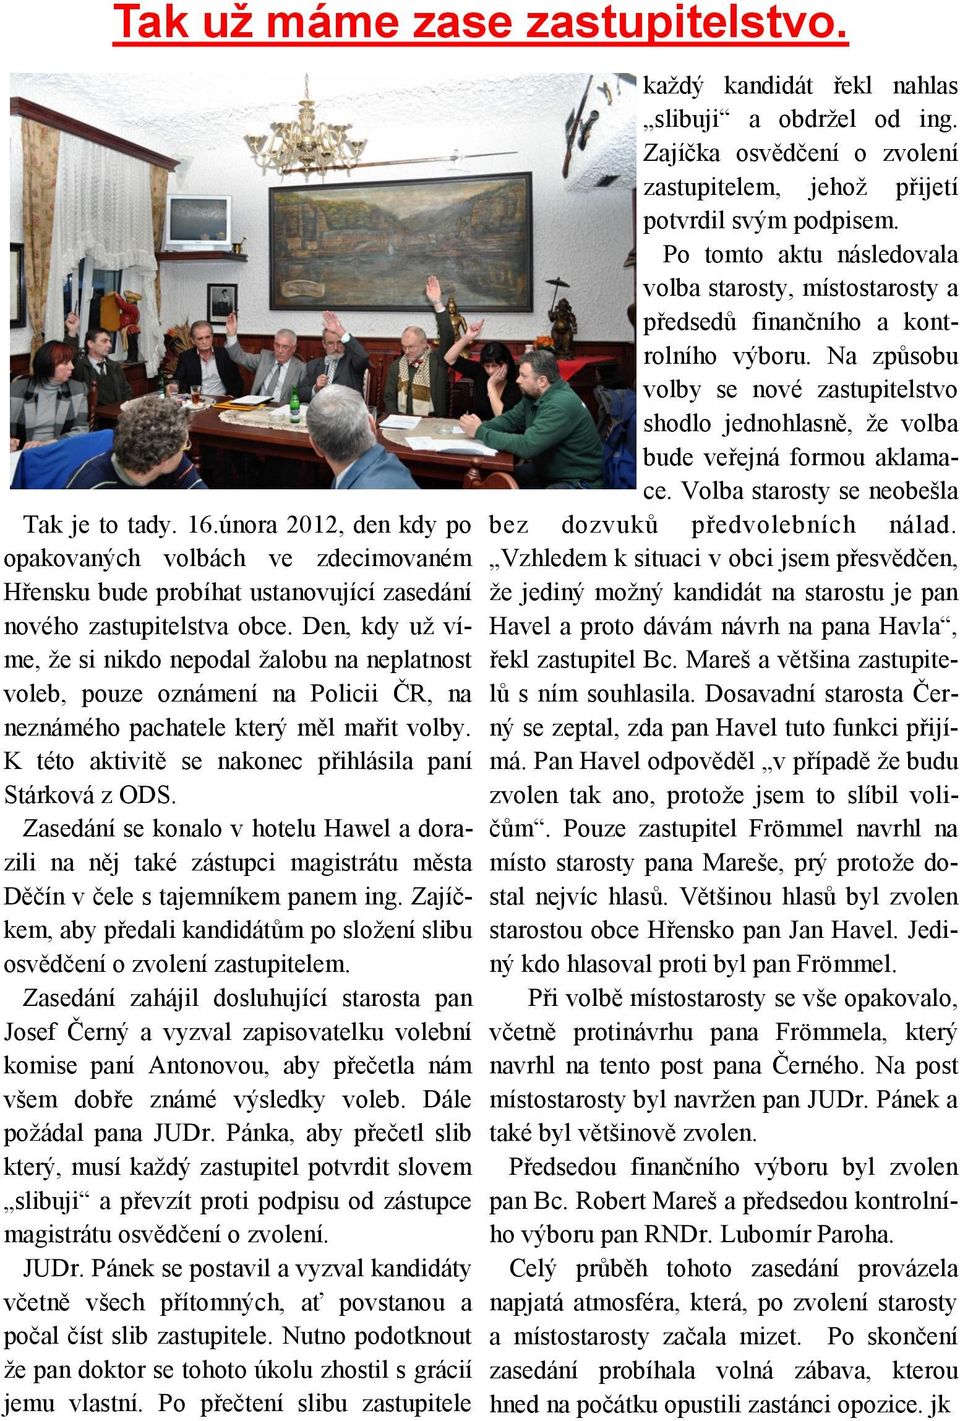 Zasedání se konalo v hotelu Hawel a dorazili na něj také zástupci magistrátu města Děčín v čele s tajemníkem panem ing.